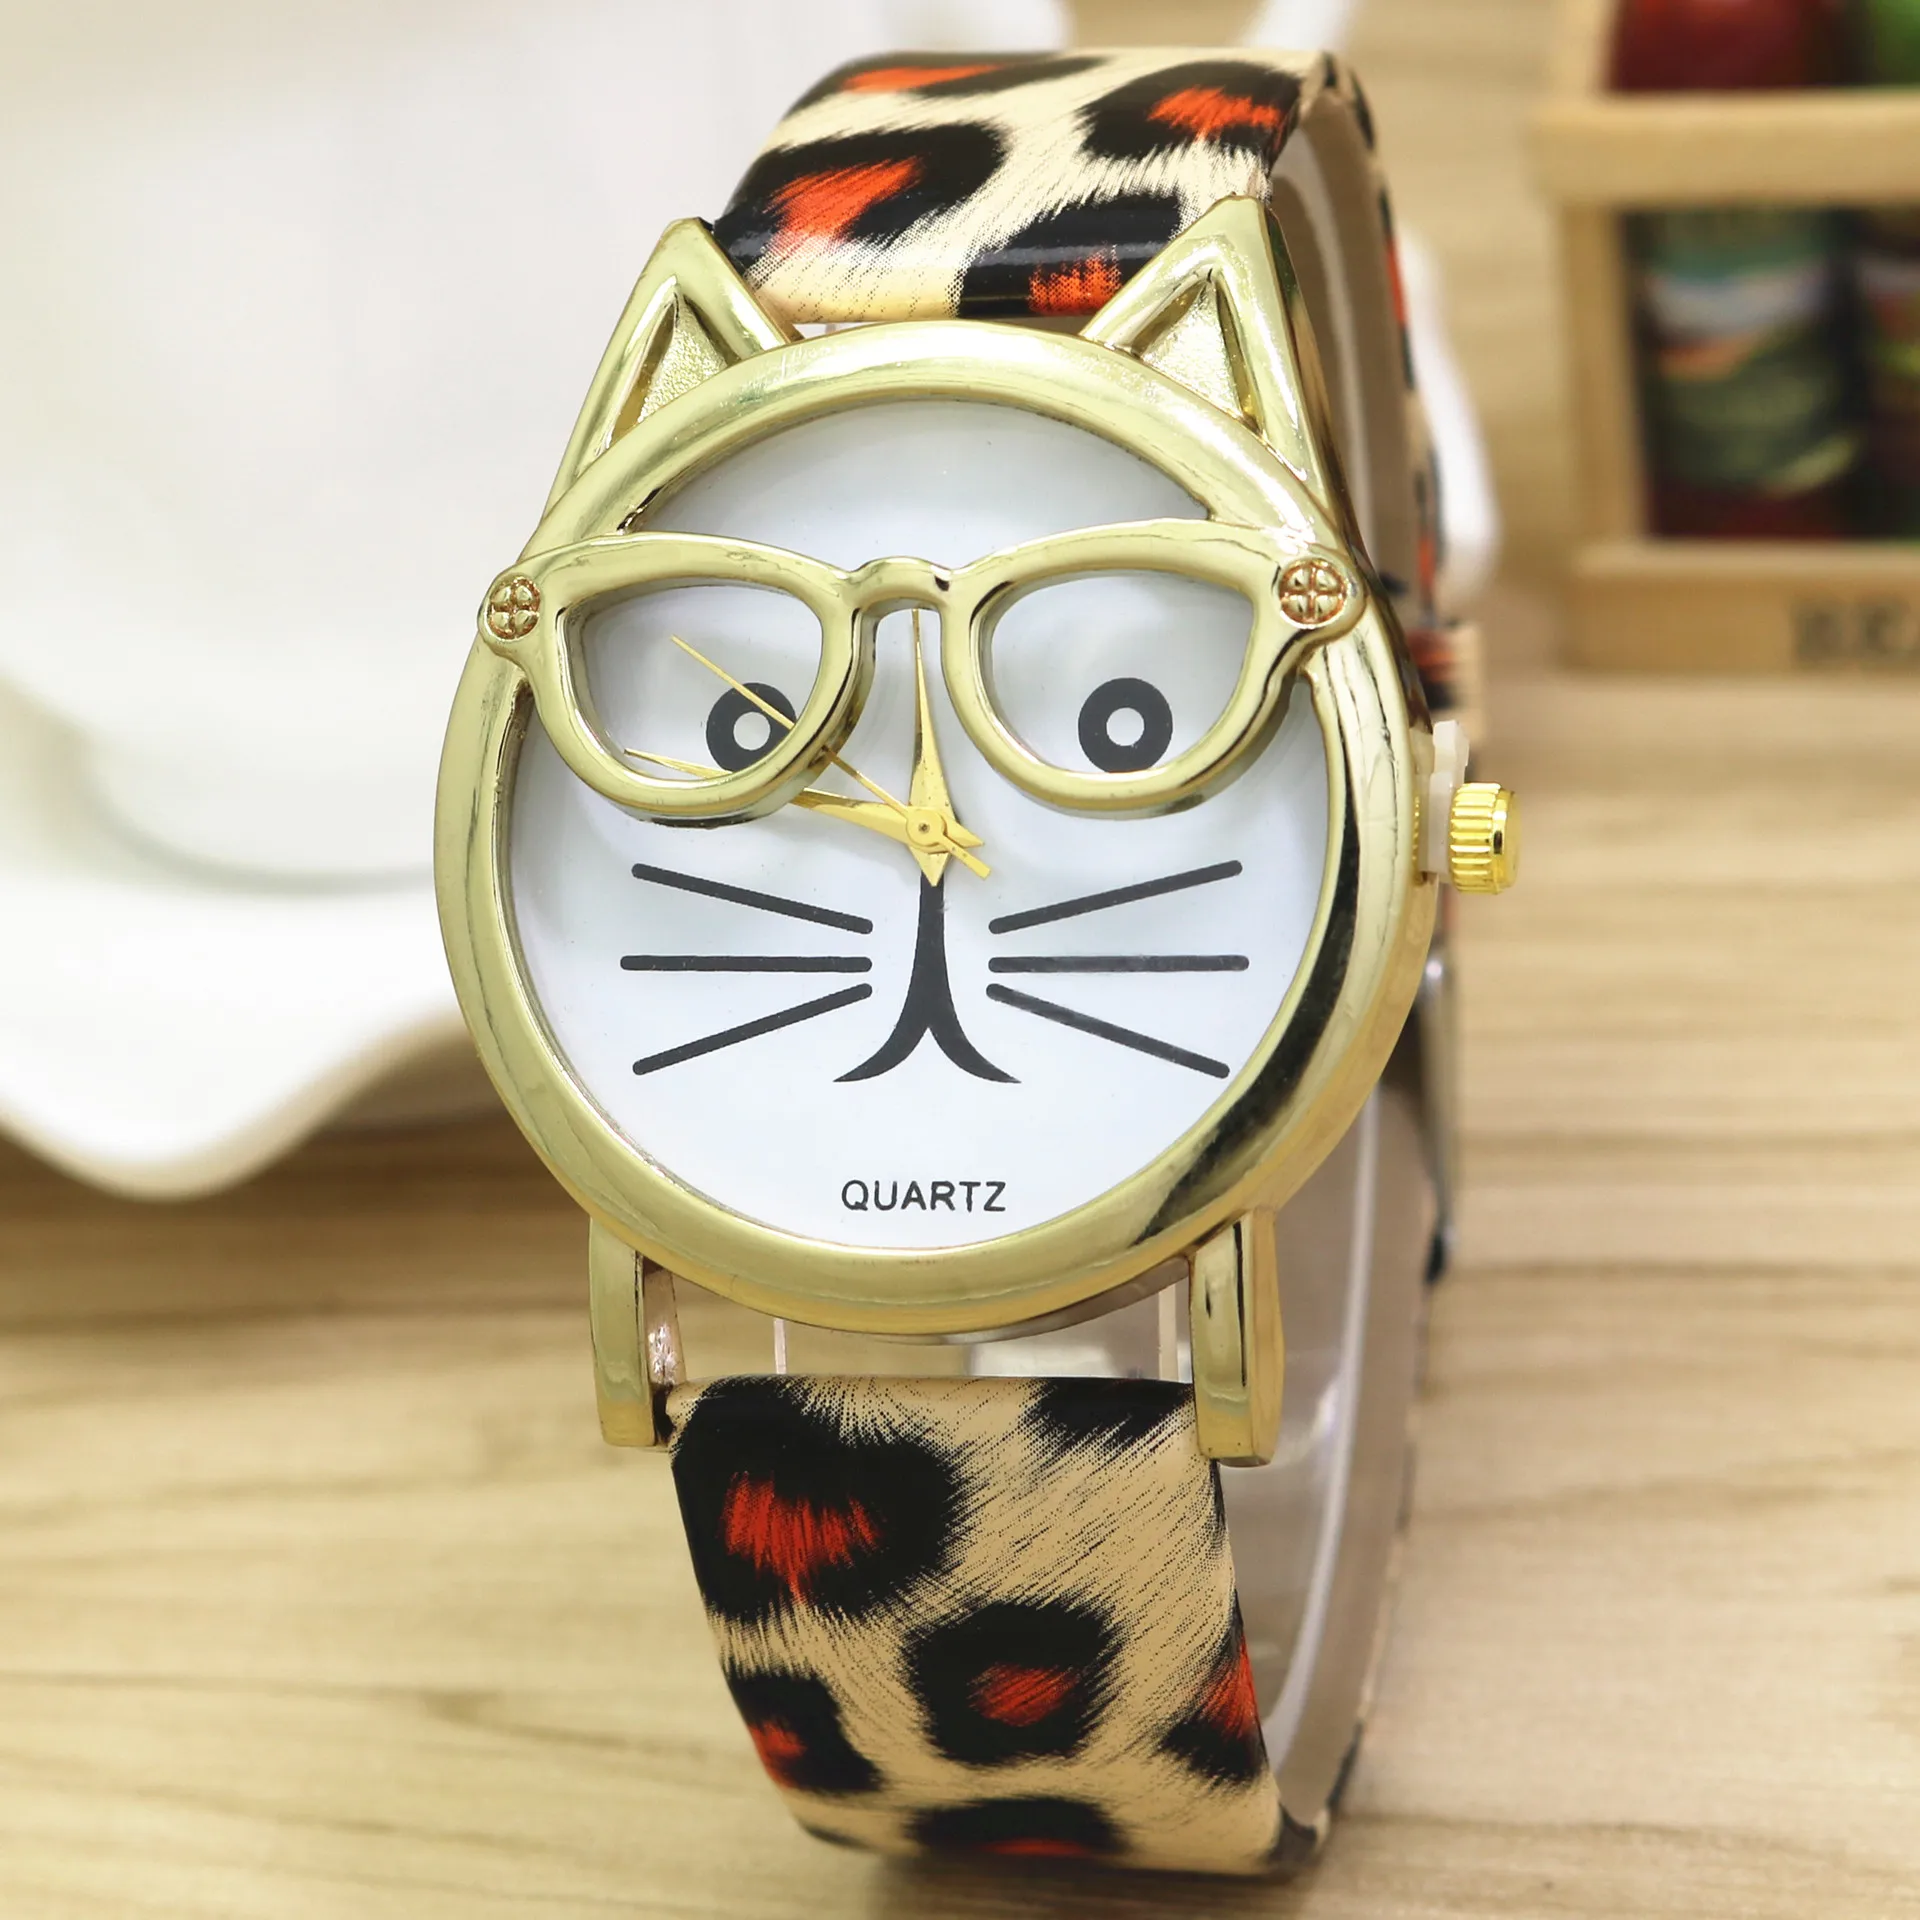 Новые простые милые очки Женские часы с котом Аналоговые кварцевые наручные часы тонкие детские подарочные часы relogio feminino